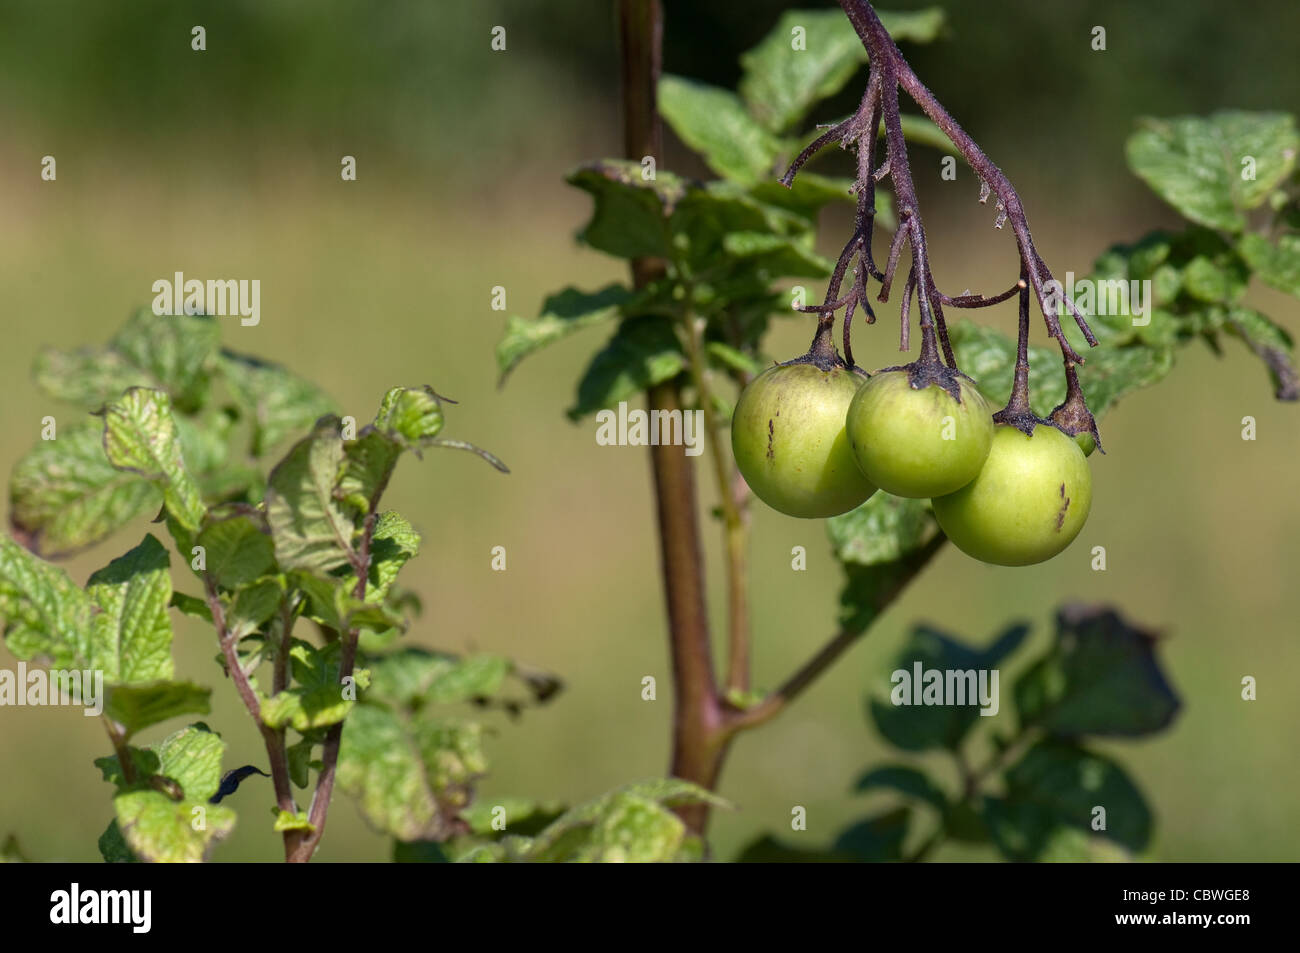 La papa (Solanum tuberosum). Fruta de una planta. Foto de stock